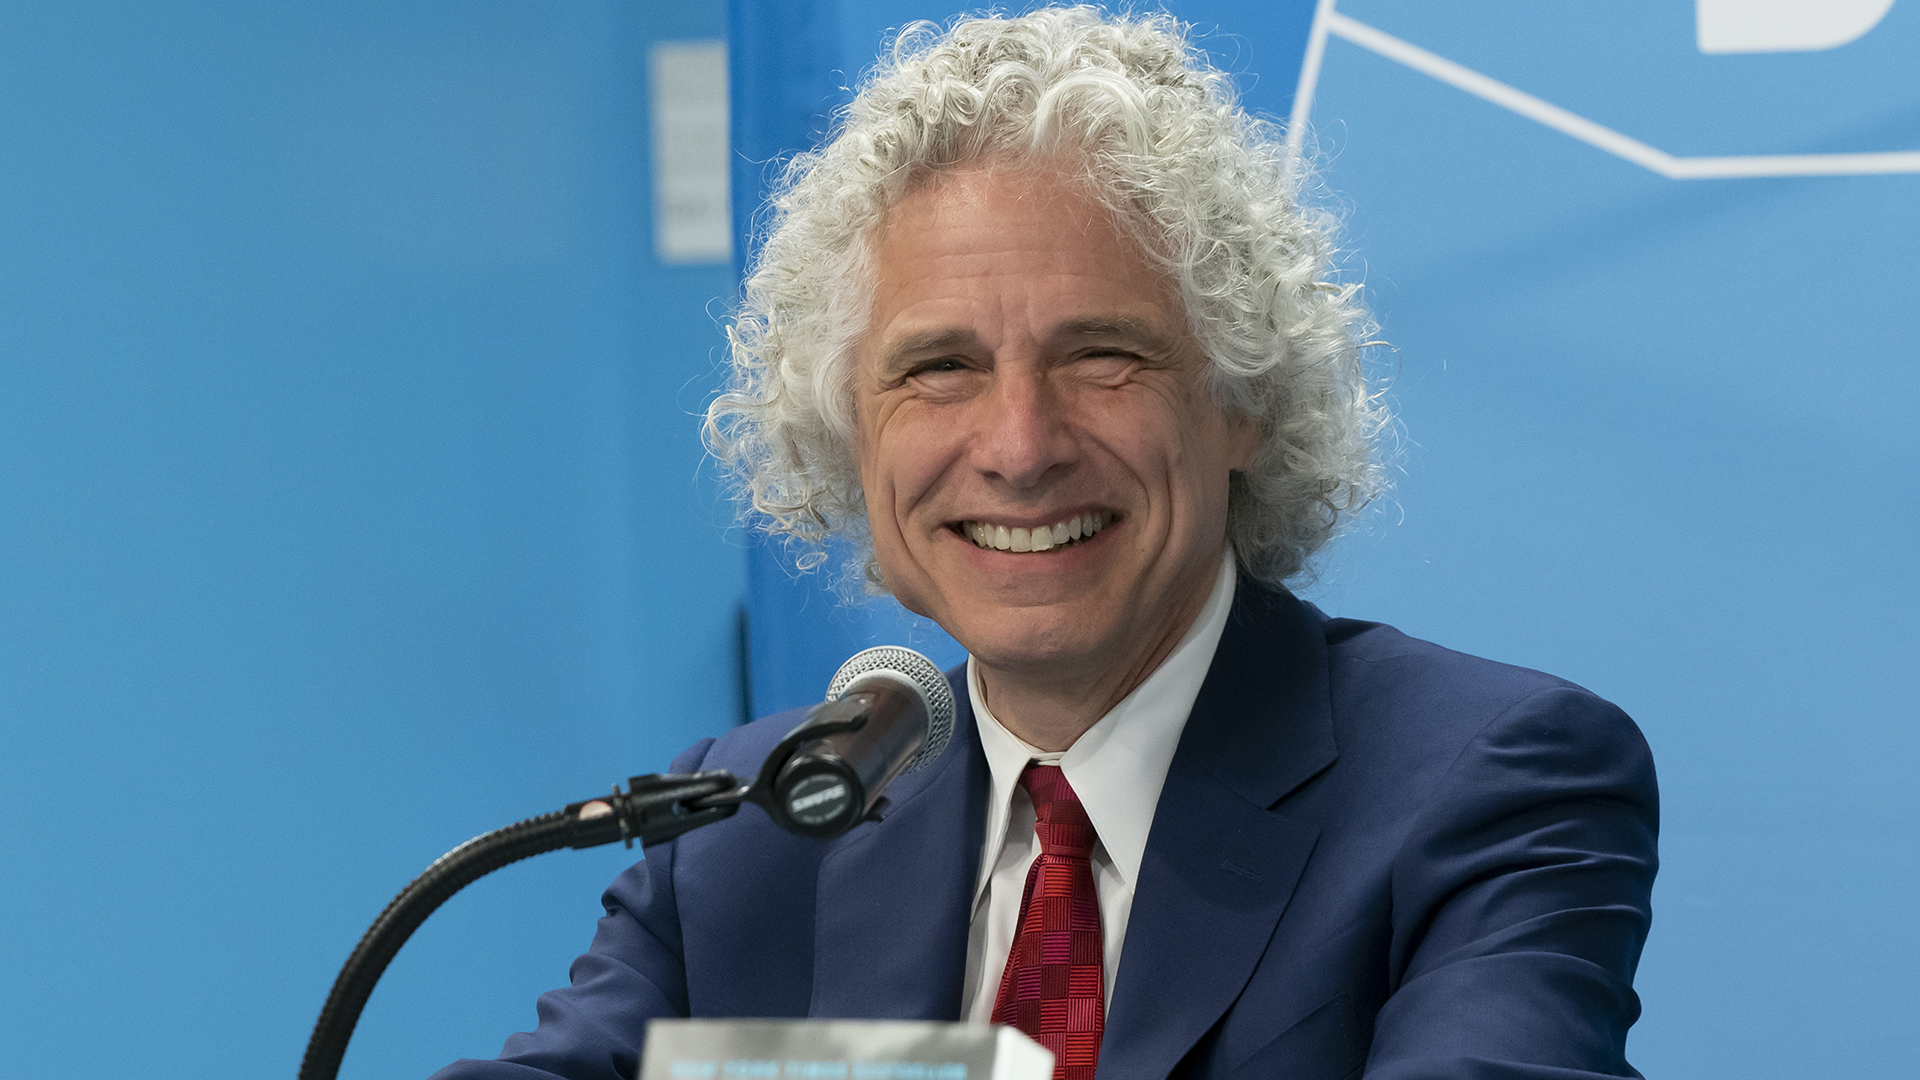 Steven Pinker at the UN